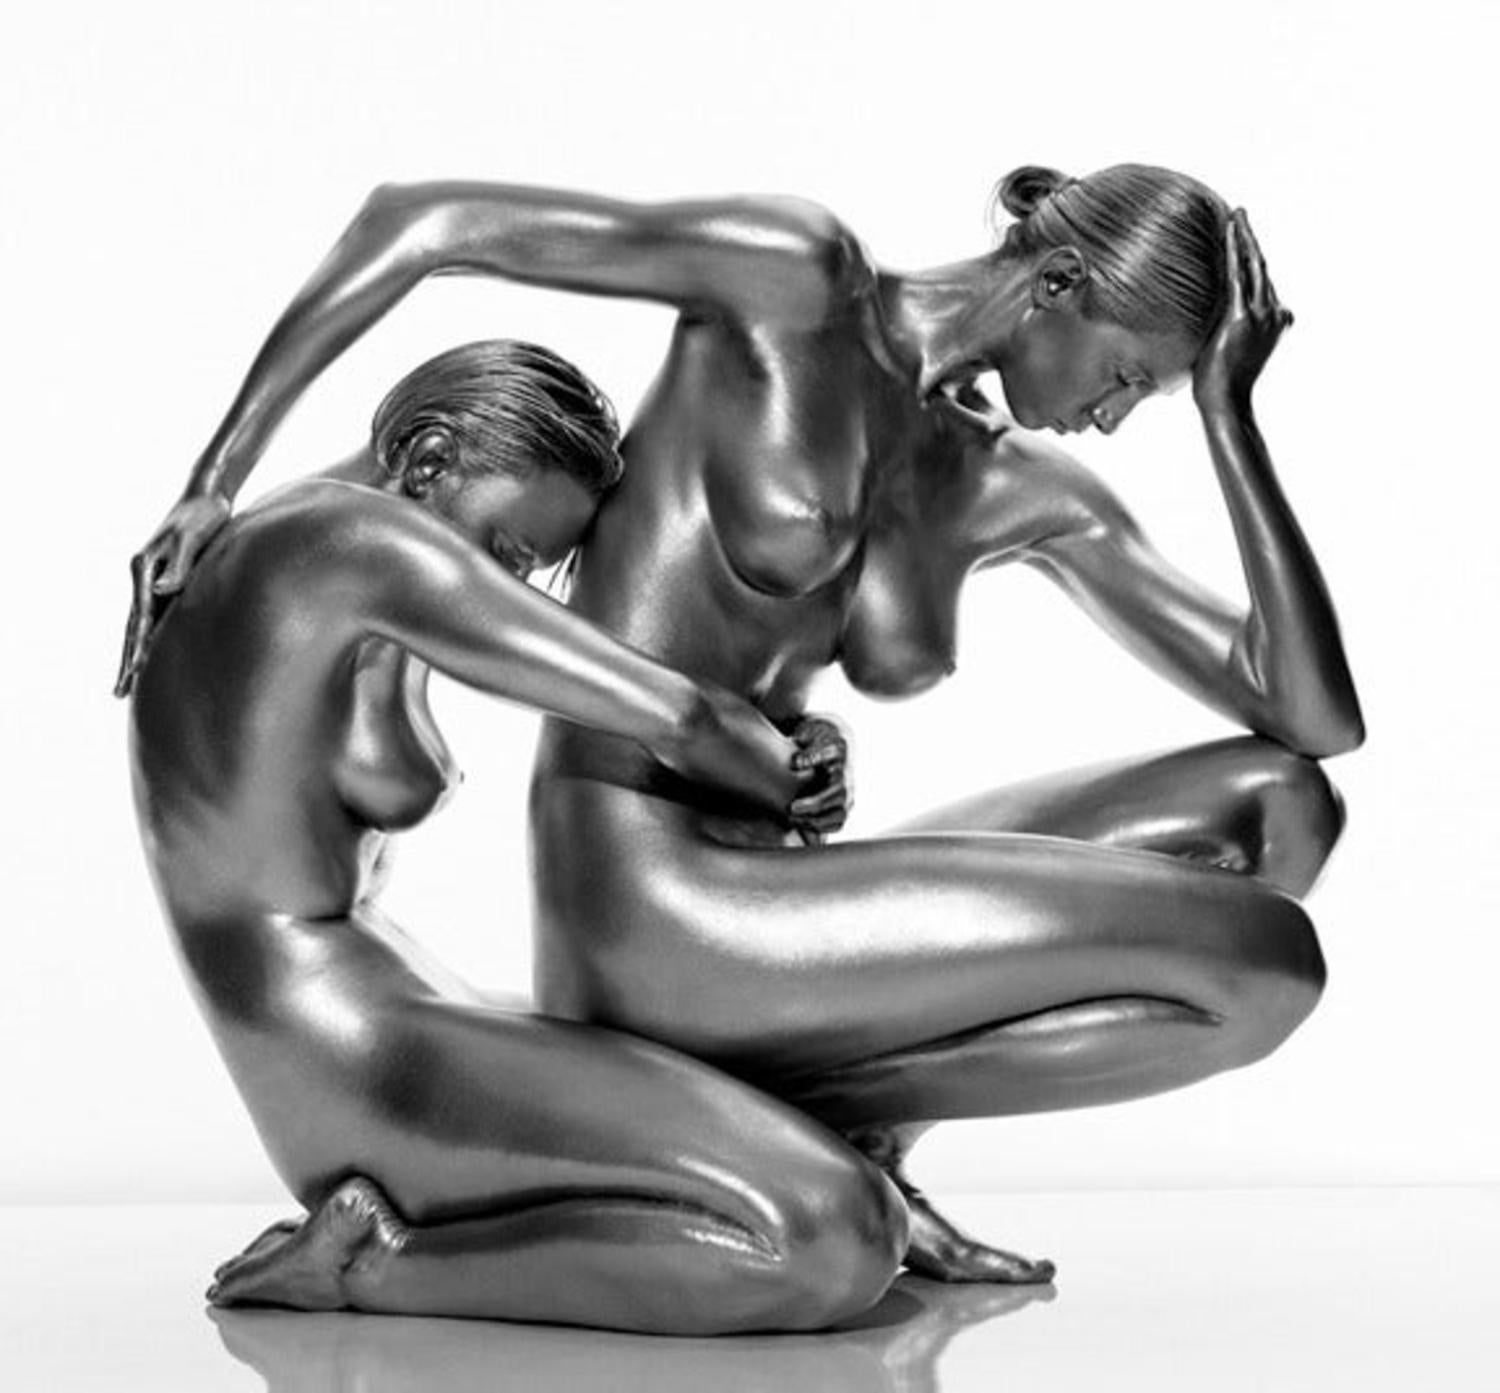 Demeter und Persephone: 2 Frauen umarmen sich gegenseitig, nackt, silberne Haut insgesamt – Photograph von Guido Argentini